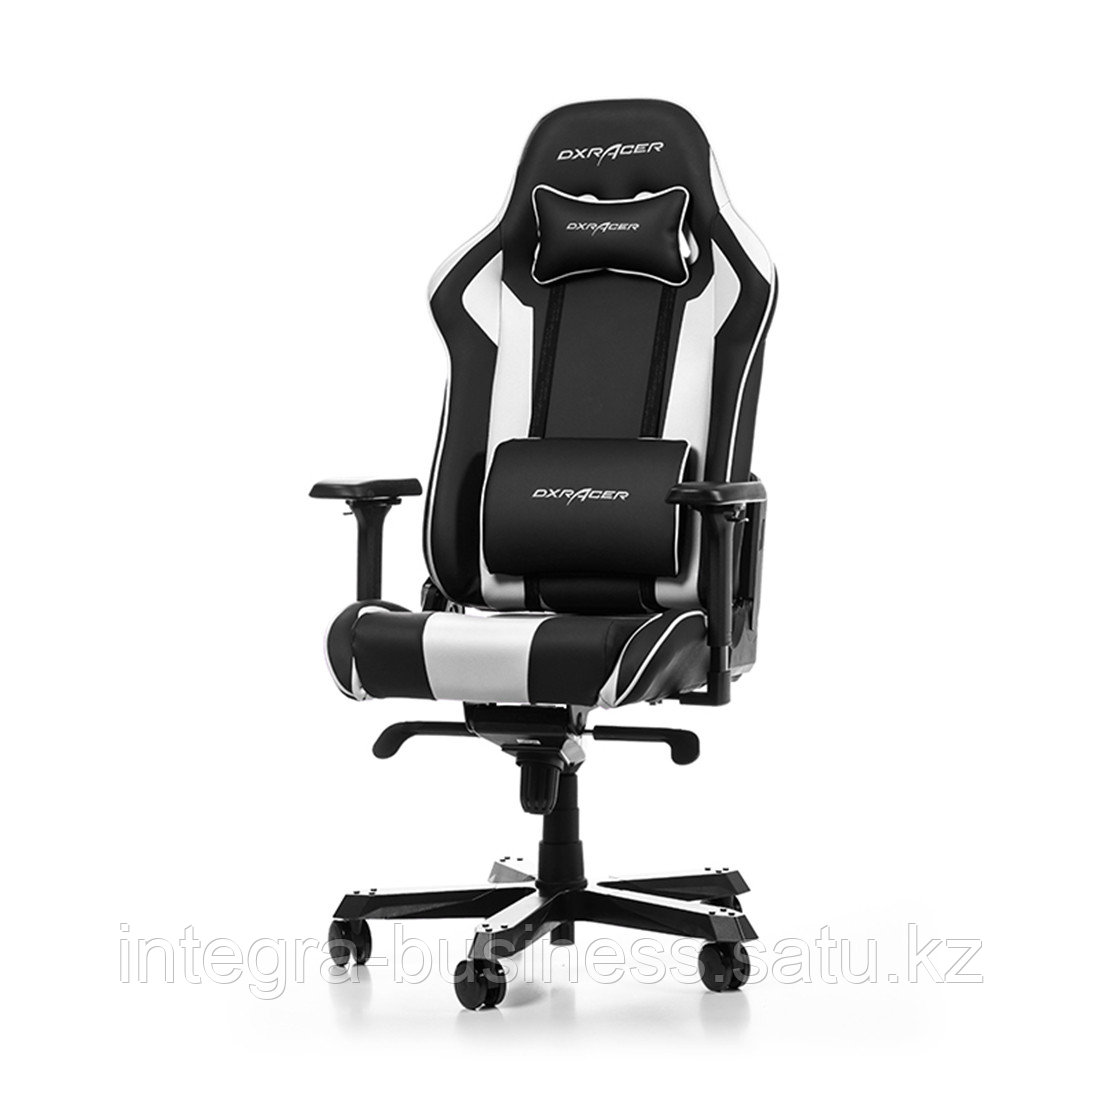 Игровое компьютерное кресло DX Racer GC/K99/NW, фото 1